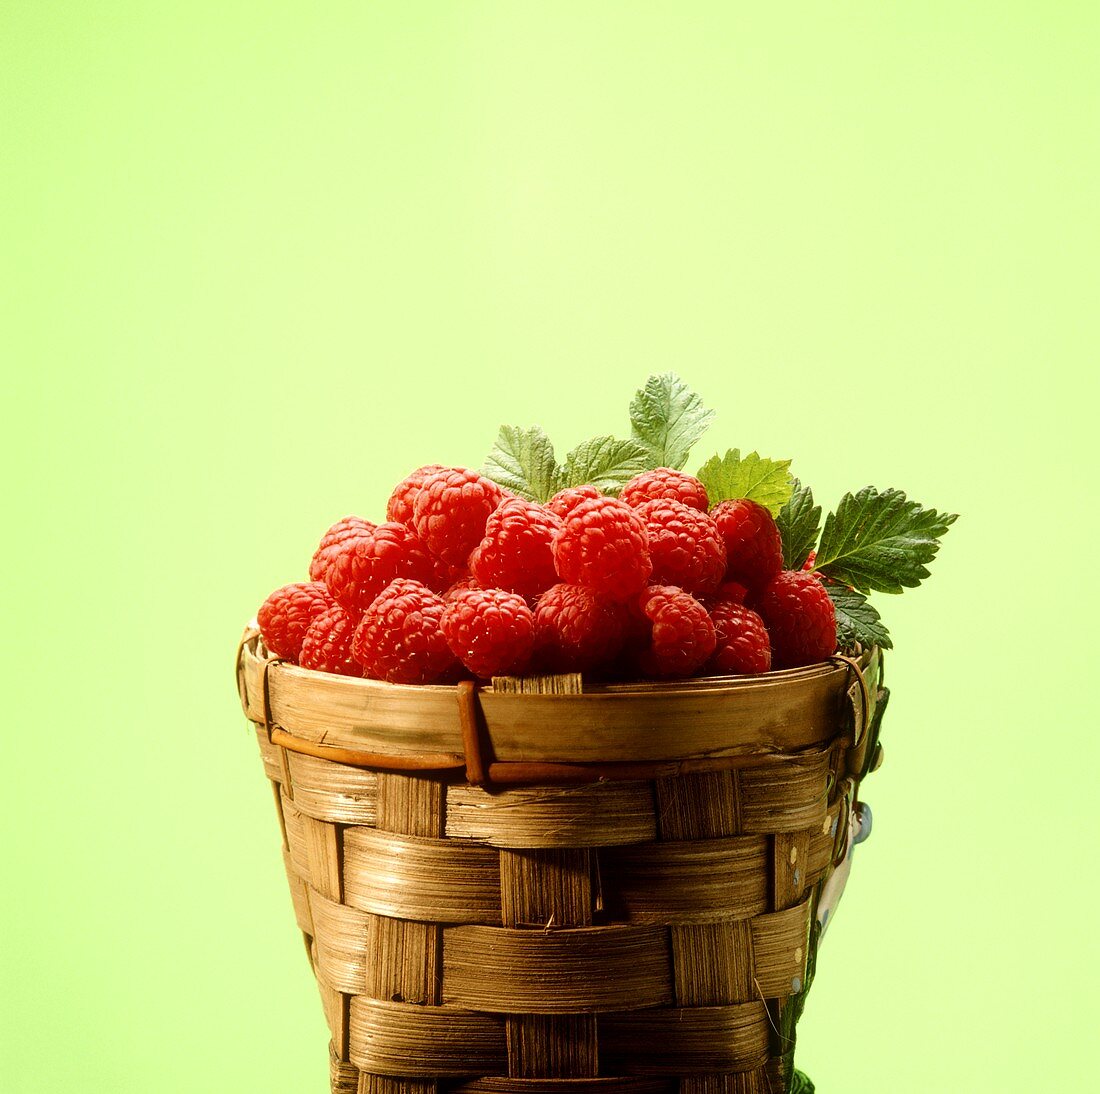 Basket Full of Freshly Picked Raspberries